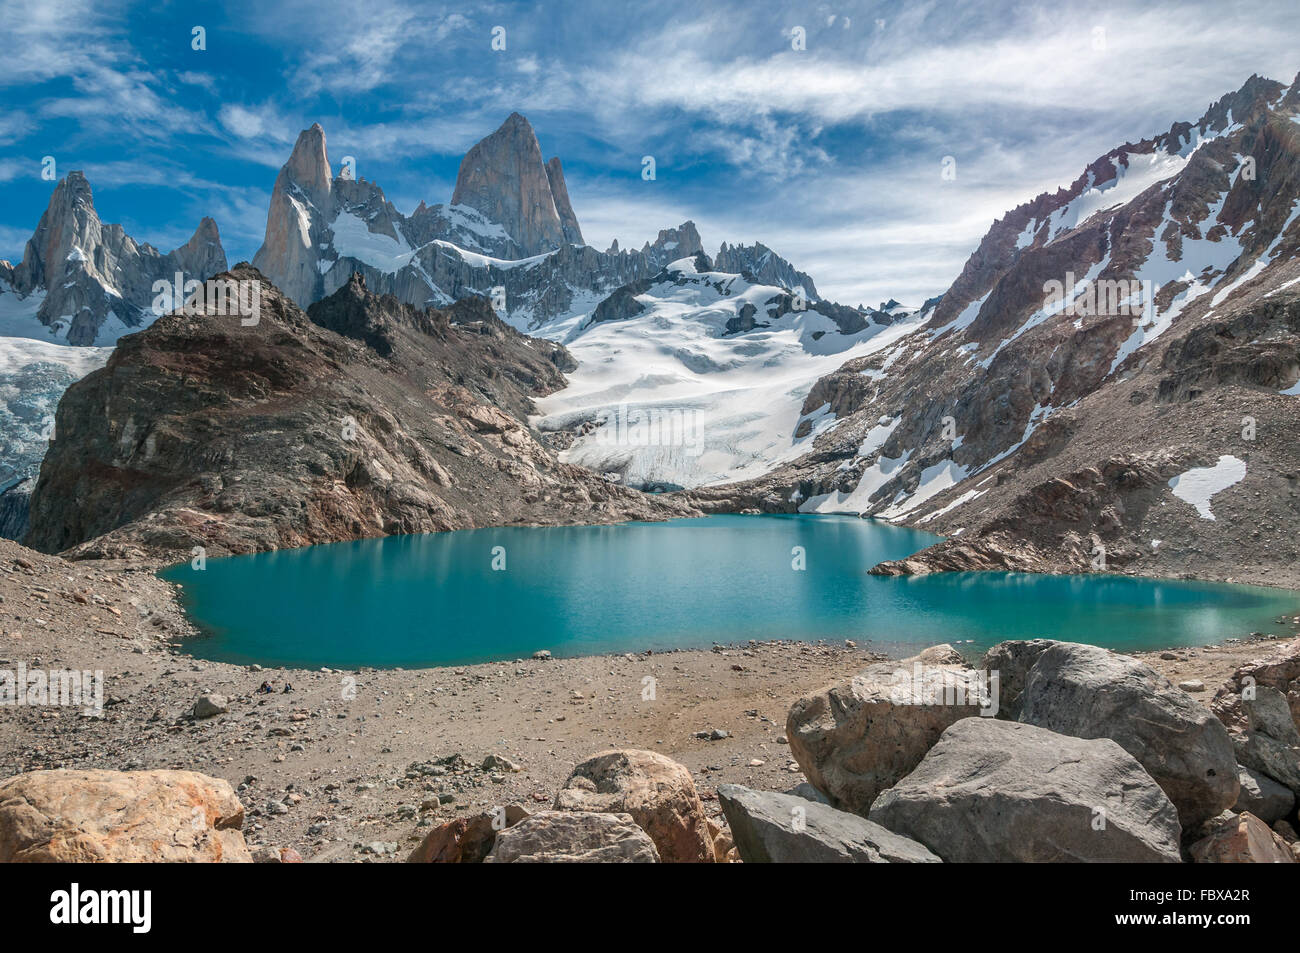 Fitz Roy mountain and Laguna de los Tres, Patagonia, Argentina Stock Photo